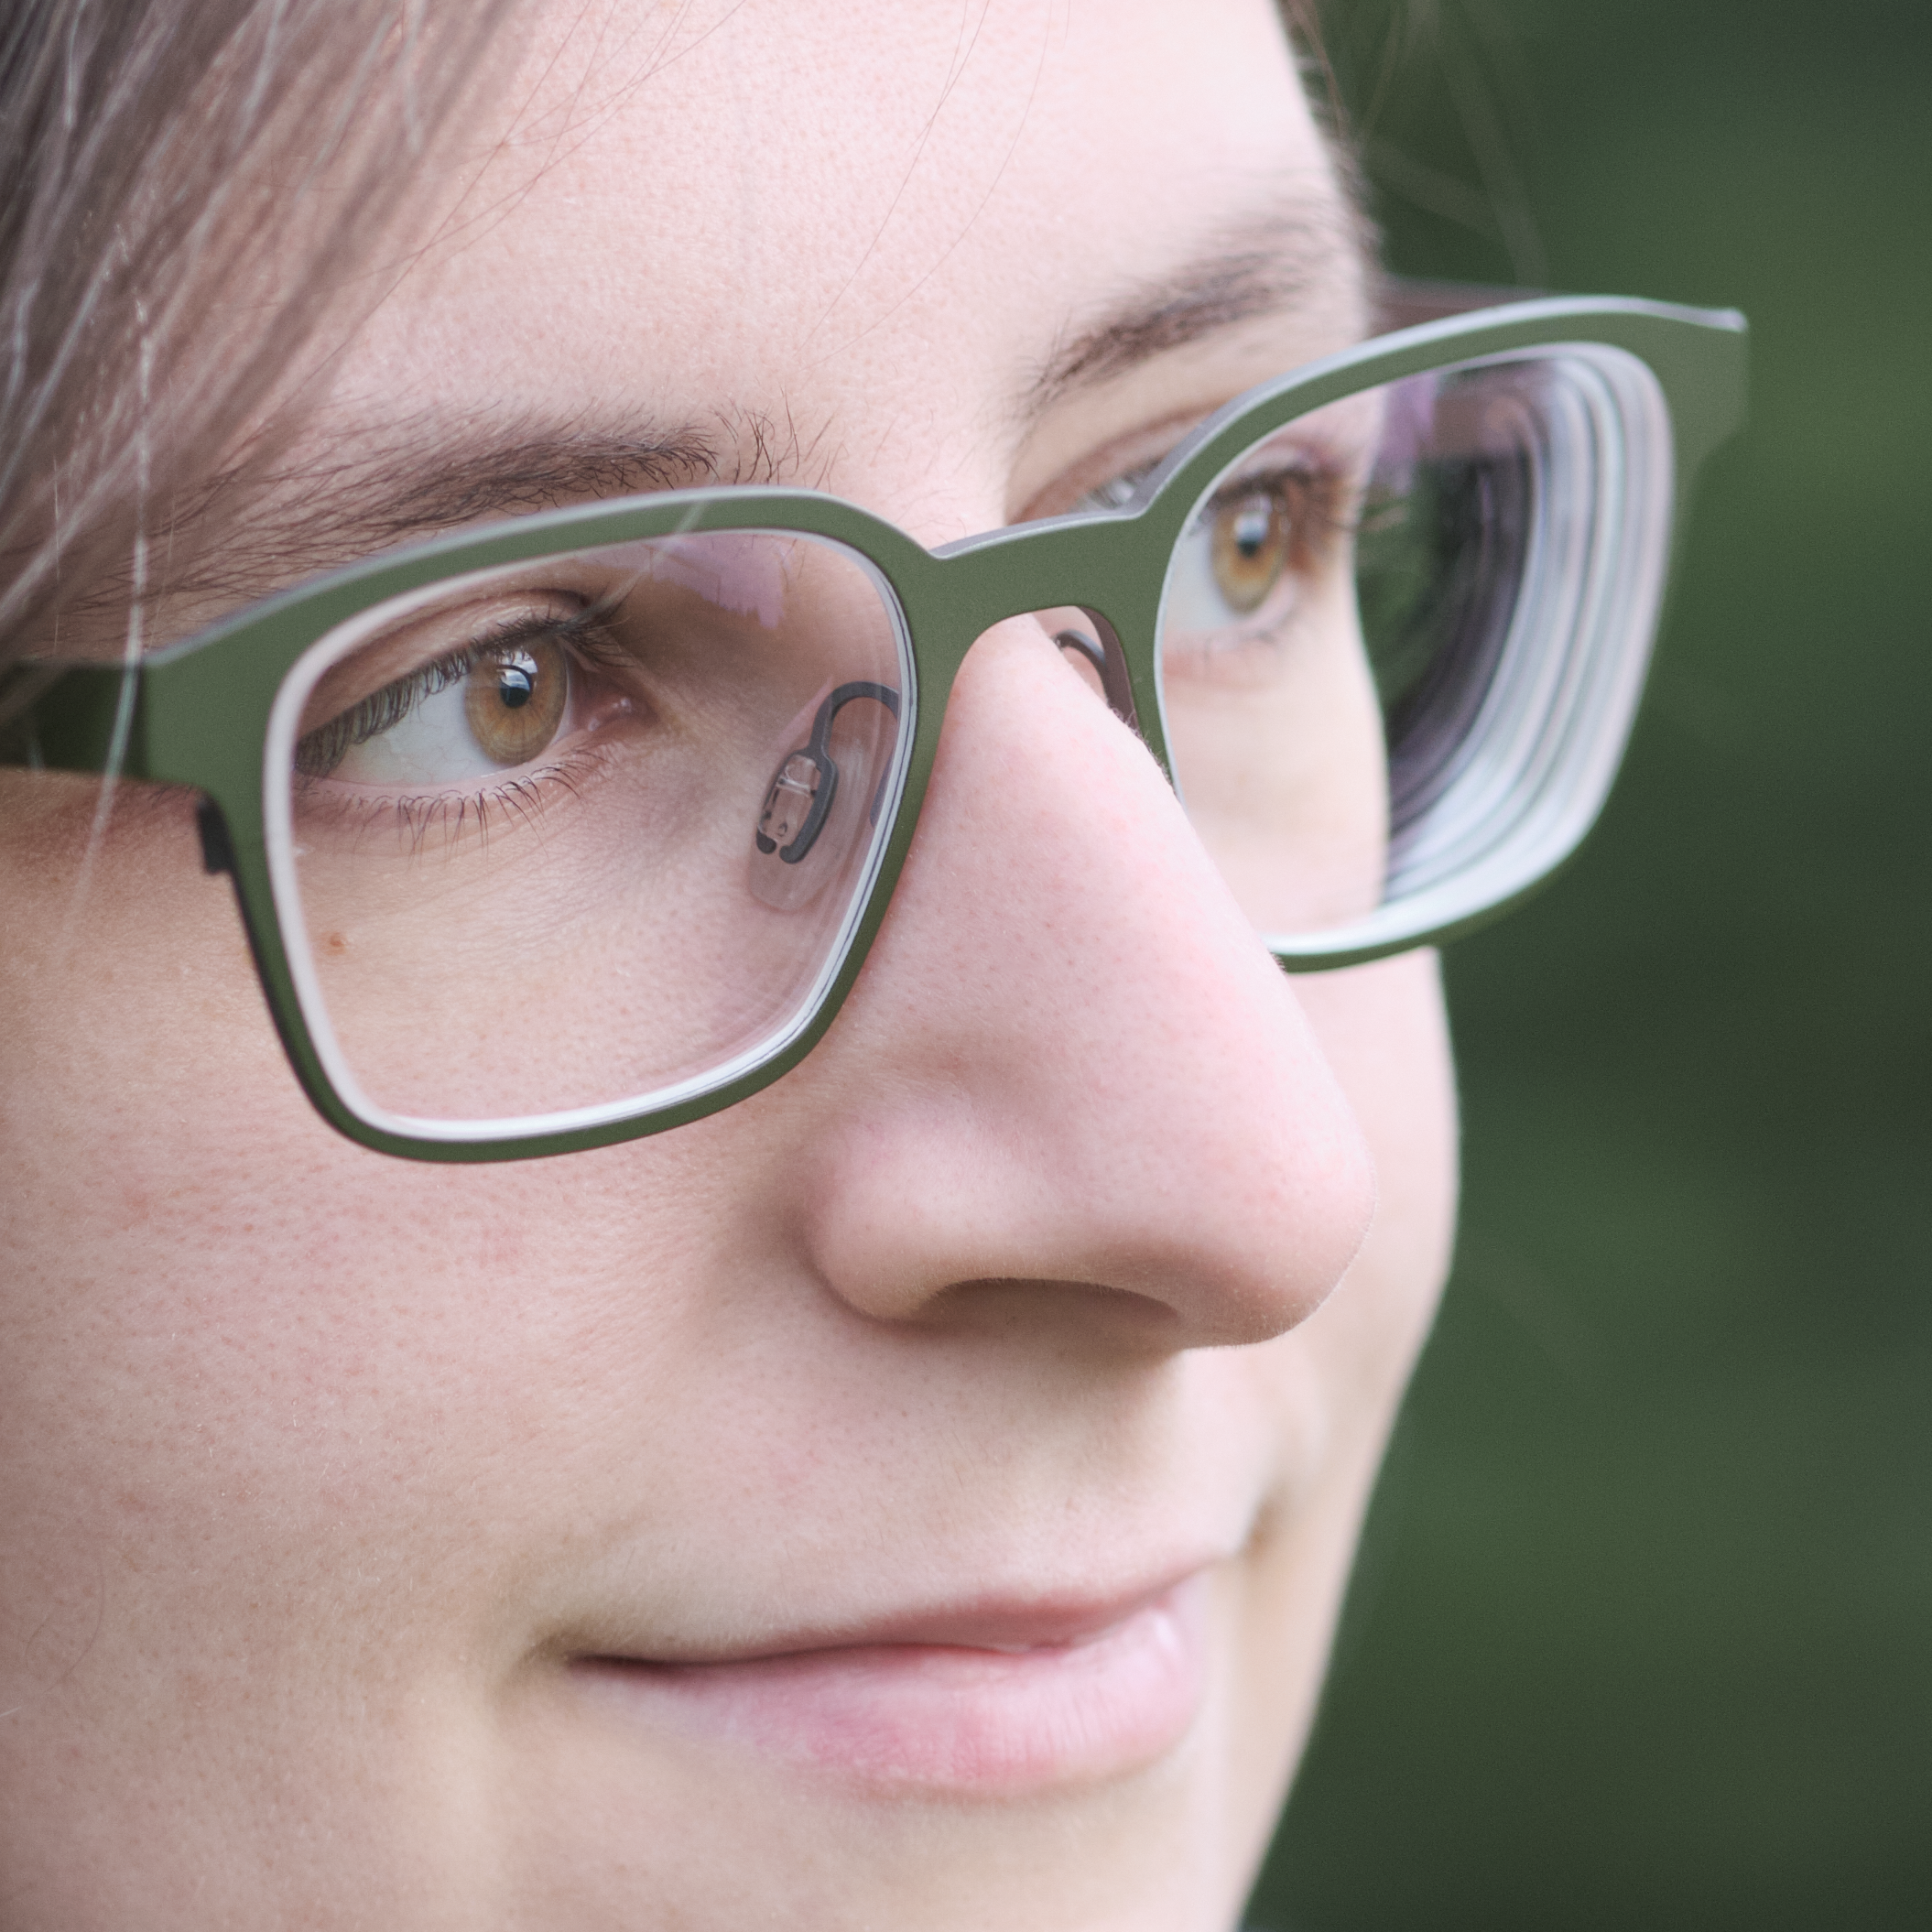 Portrait einer Frau im Close-up mit grüner Brille